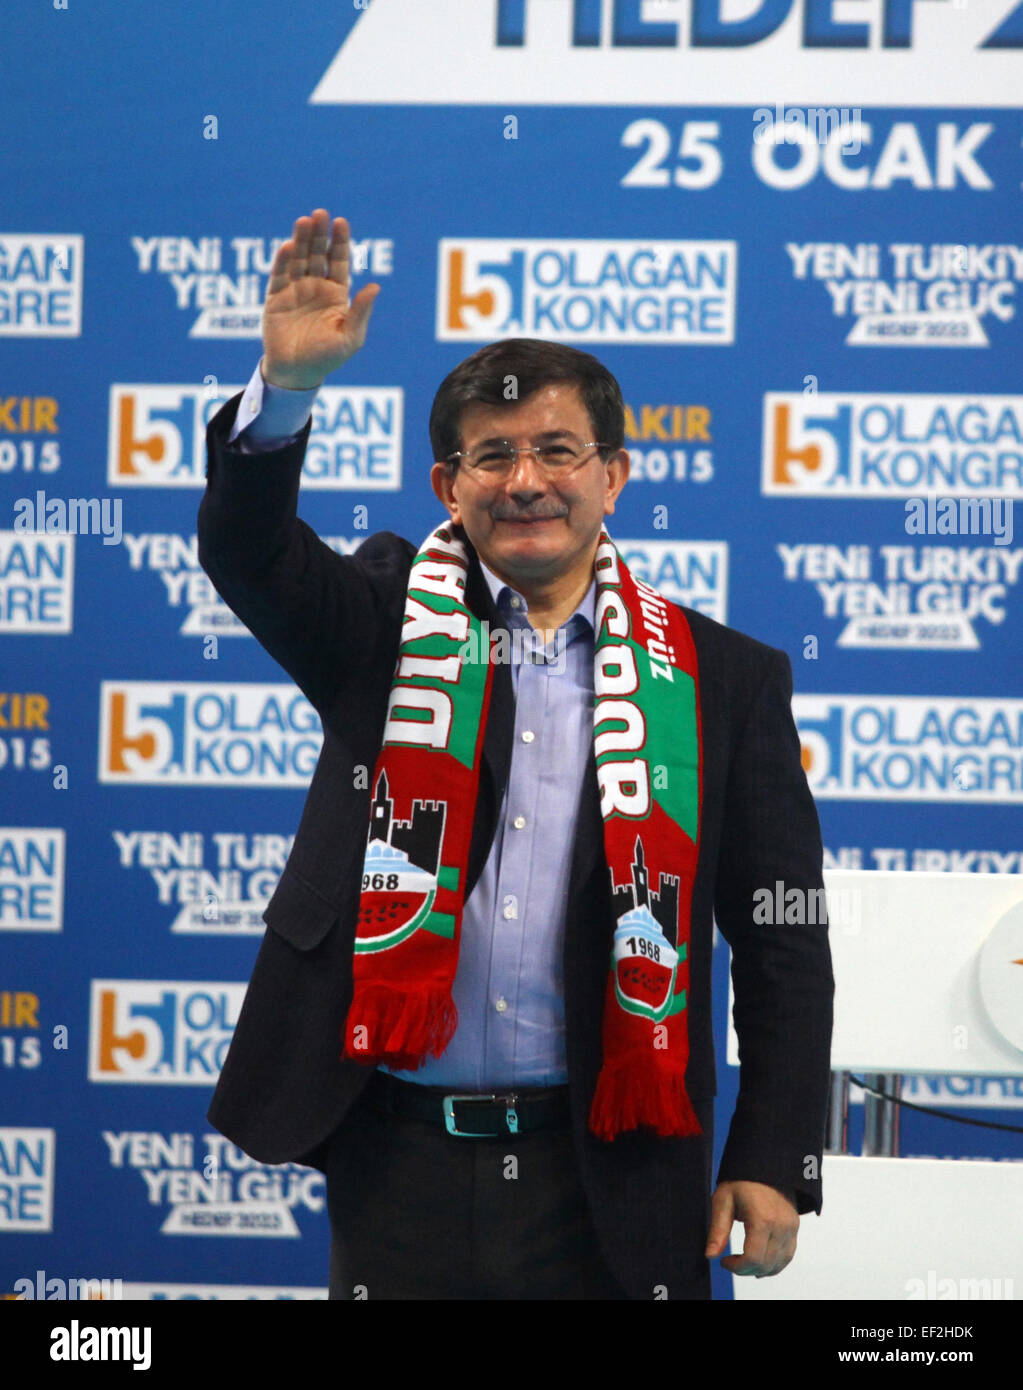 (150125) -- Diyarbakir (Turquie), le 25 janvier 2015 (Xinhua) -- Le Premier ministre turc Ahmet Davutoglu vagues lorsqu'il assiste, le parti de la Justice et du développement (AKP) congrès provincial du sud-est de la Turquie, province de Diyarbakir, peuplée principalement par des Kurdes, le 25 janvier 2015. Premier ministre turc Ahmet Davutoglu a déclaré dimanche que son gouvernement et son parti AKP sont prêts à sacrifier leur tout ce 'pour des raisons de succès du processus de paix' avec des Kurdes en Turquie. (Xinhua/Mert Macit) Banque D'Images